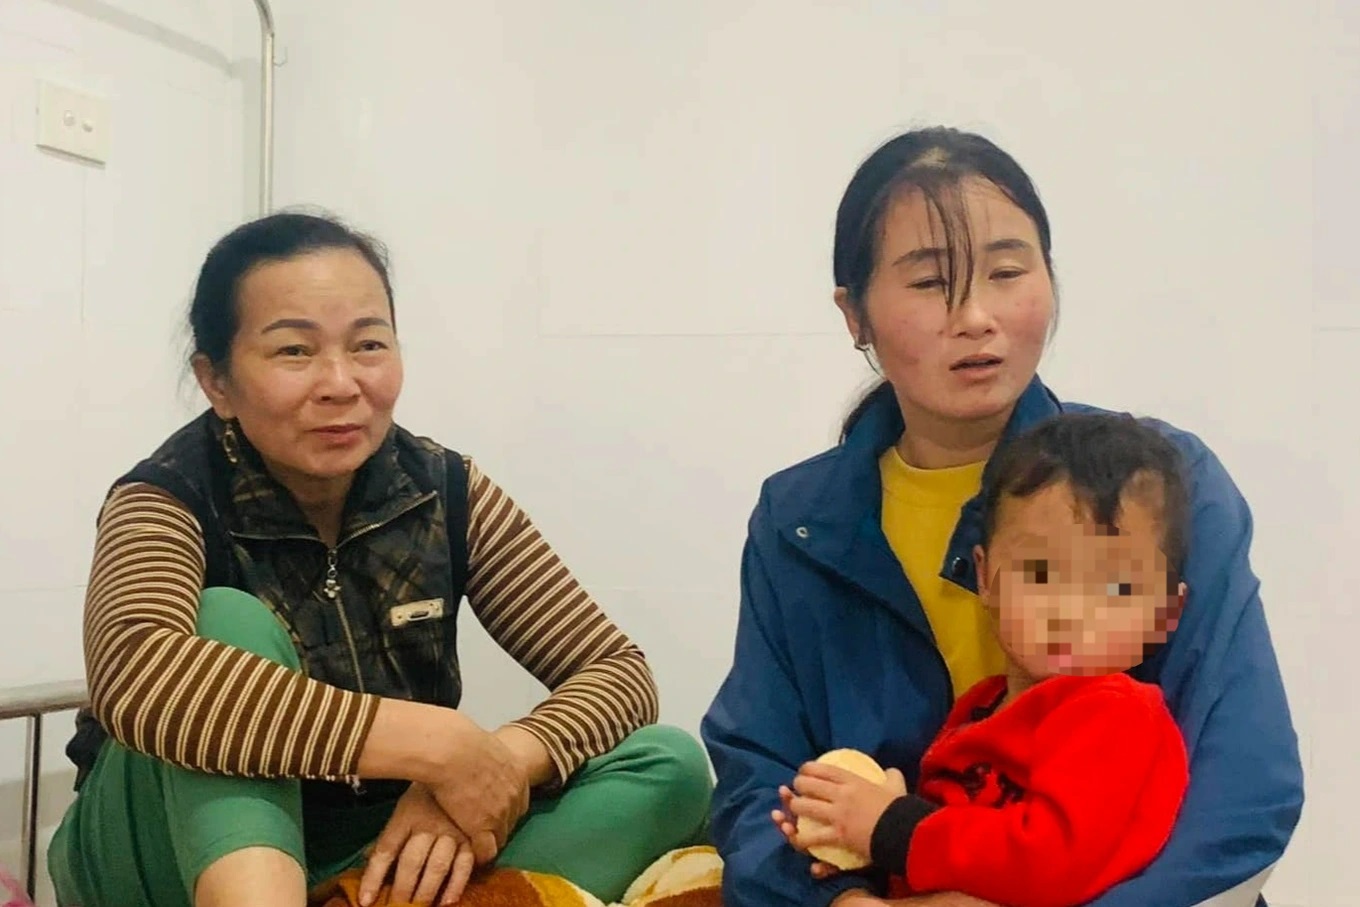 Cháu bé 2 tuổi ở Nghệ An được tìm thấy sau 3 ngày mất tích, nhân chứng tiết lộ điều kỳ lạ ở hiện trường - ảnh 1